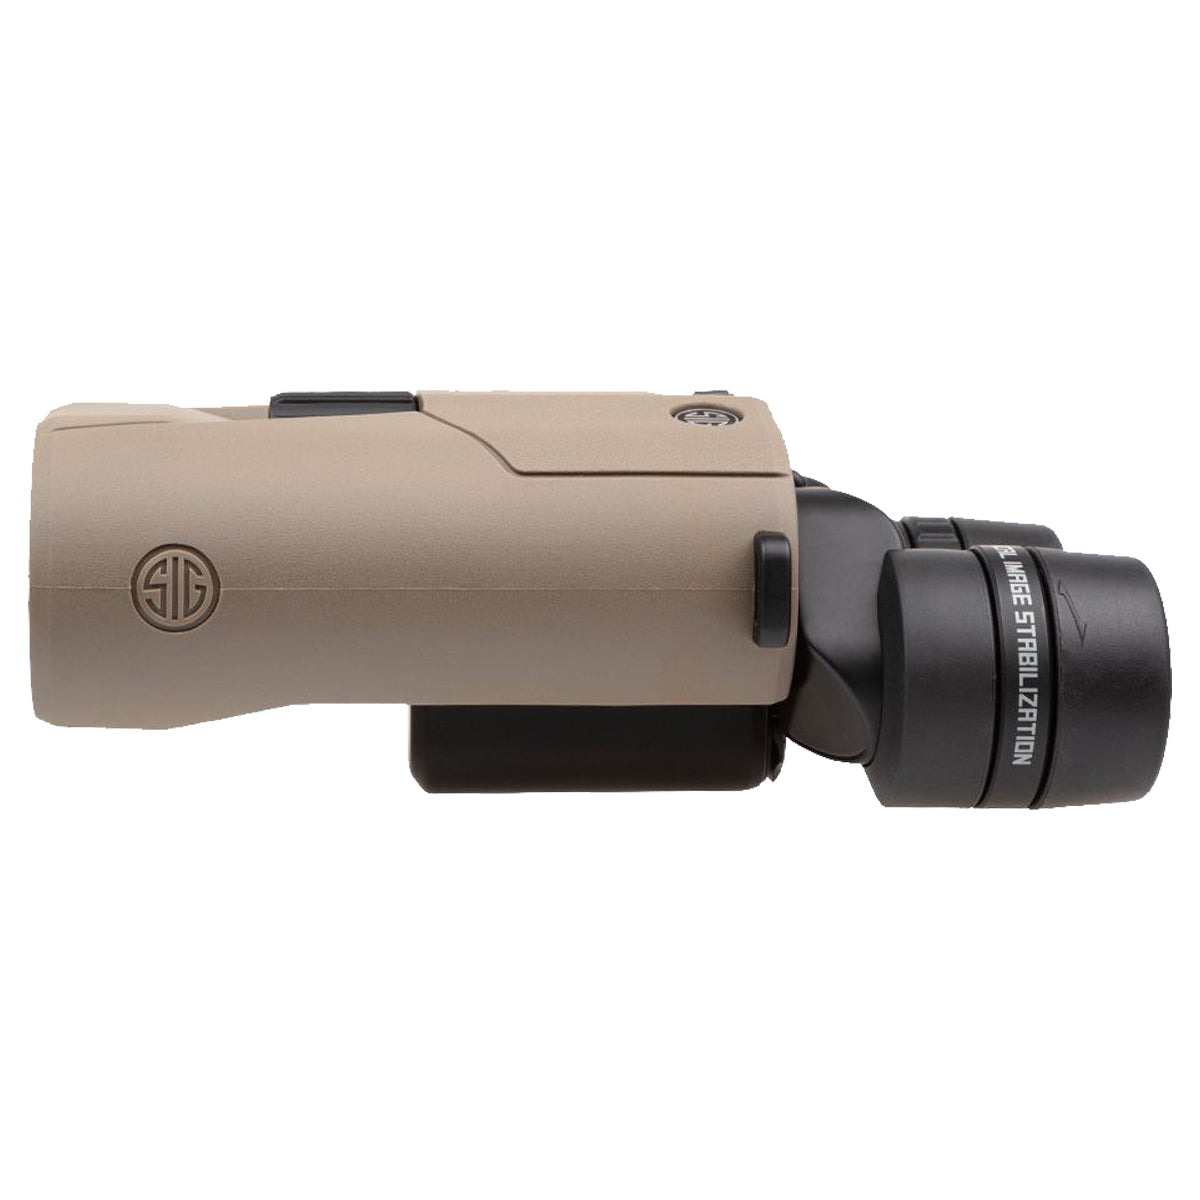 Sig Sauer ZULU6 HDX 16x42mm Image Stabilized Binocular in  by GOHUNT | Sig Sauer - GOHUNT Shop